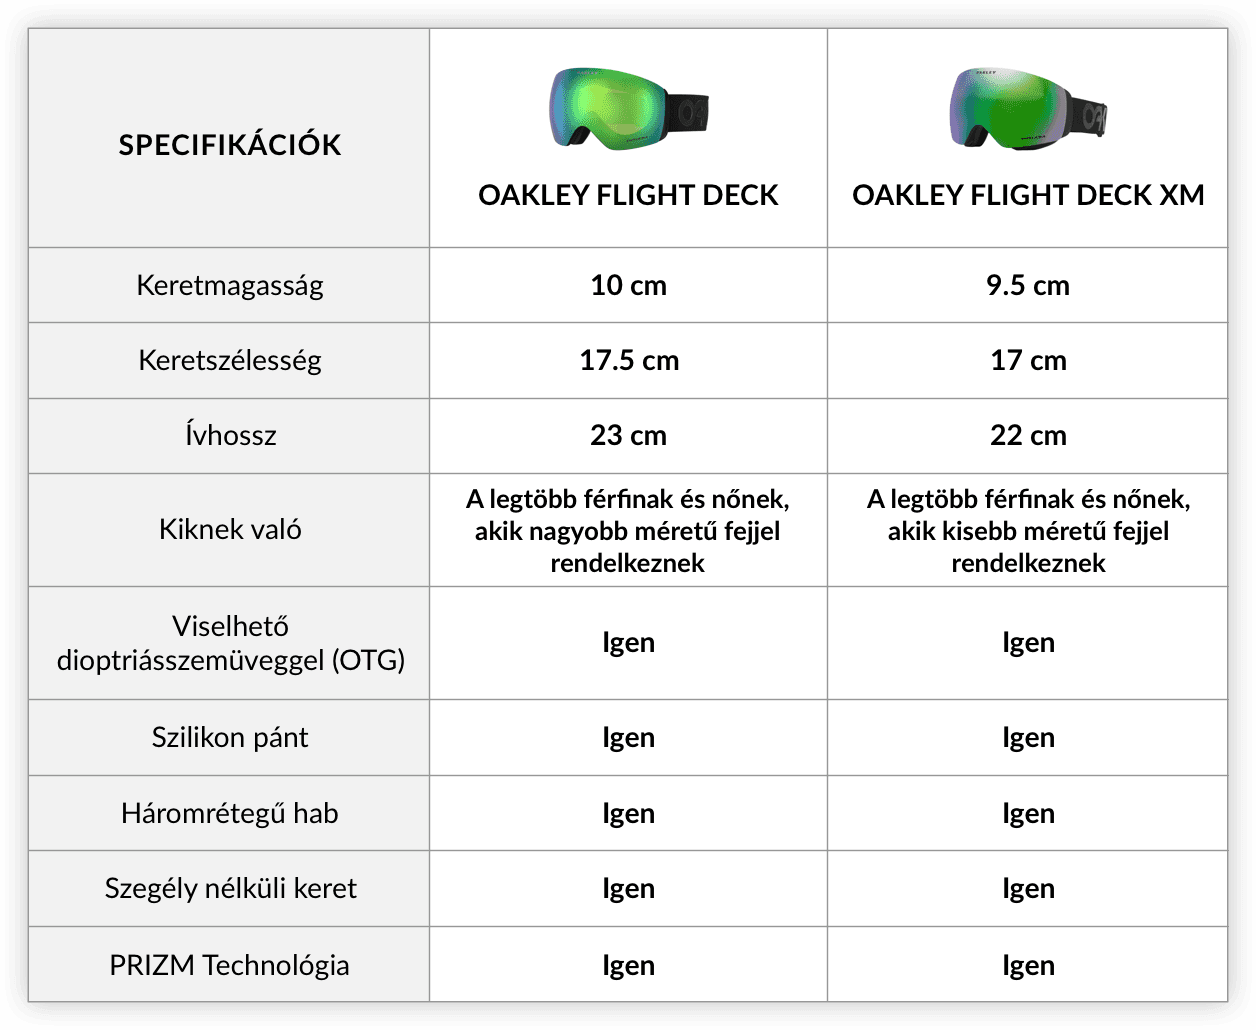 Oakley Flight Deck x Oakley Flight Deck XM - mi a különbség közöttük? Oakley síszemüvegek az eyerimen